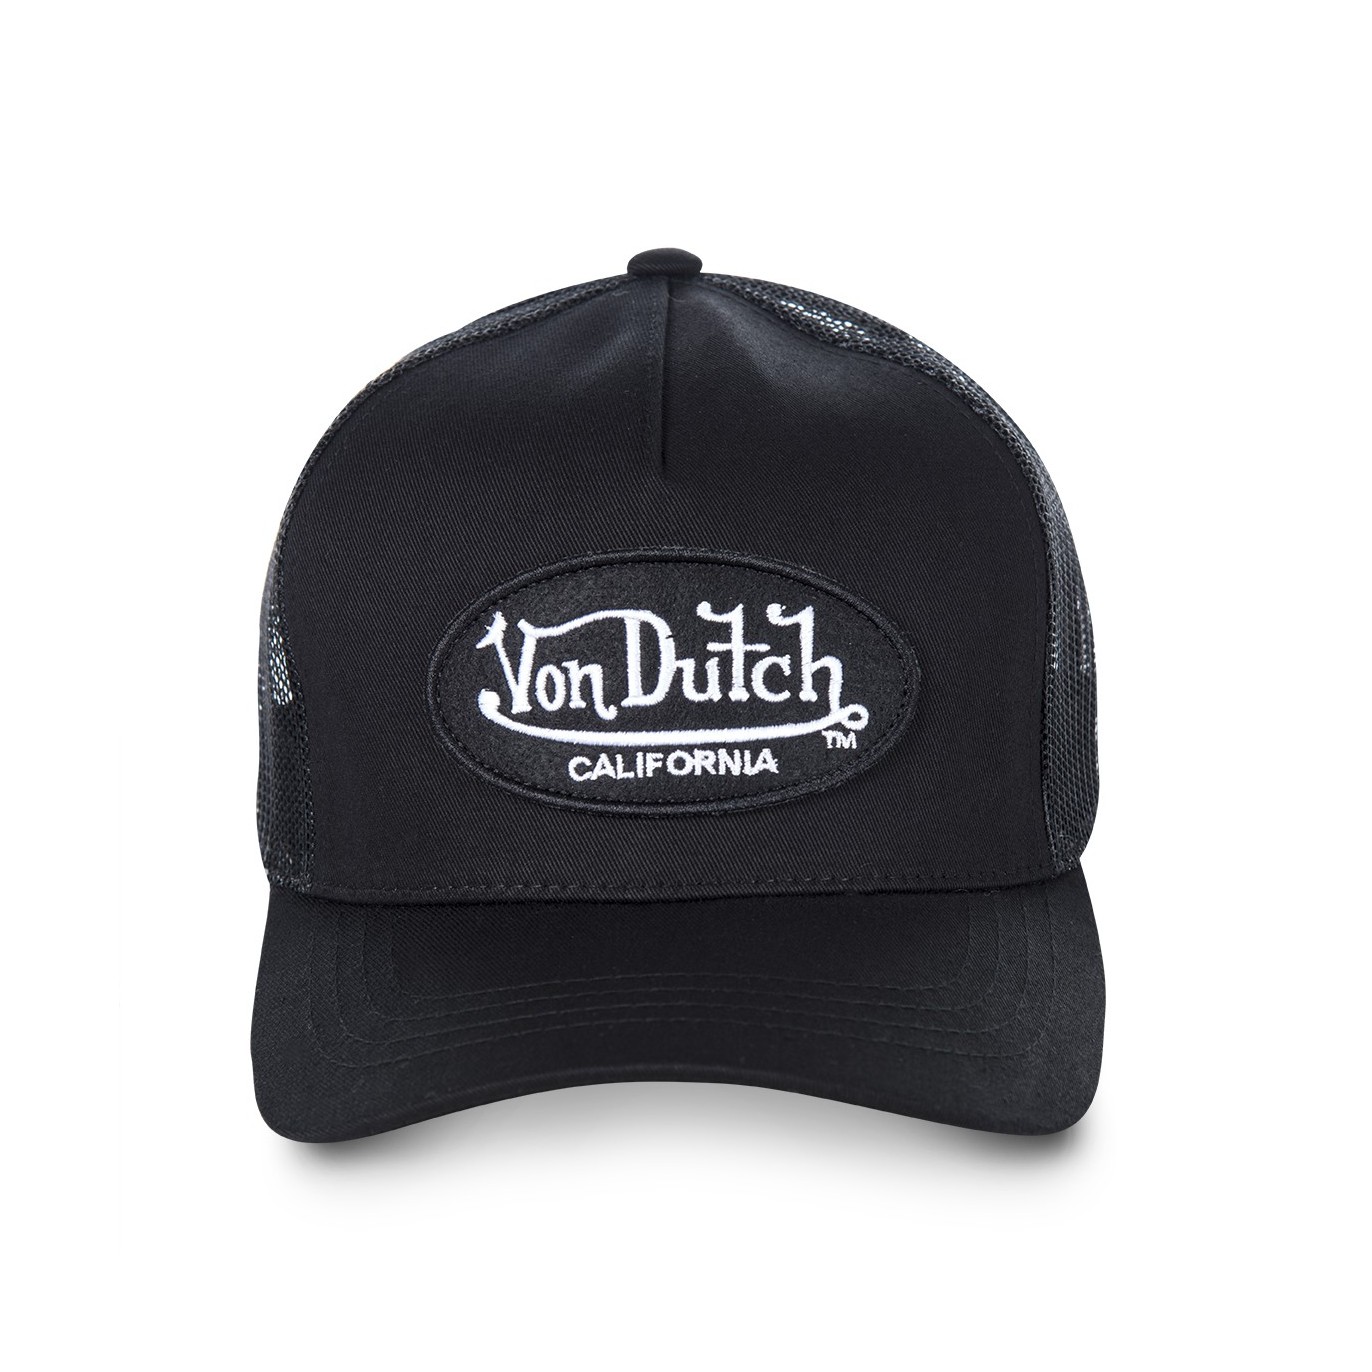 Casquette Von Dutch baseball Lofb California filet Noir - Von Dutch